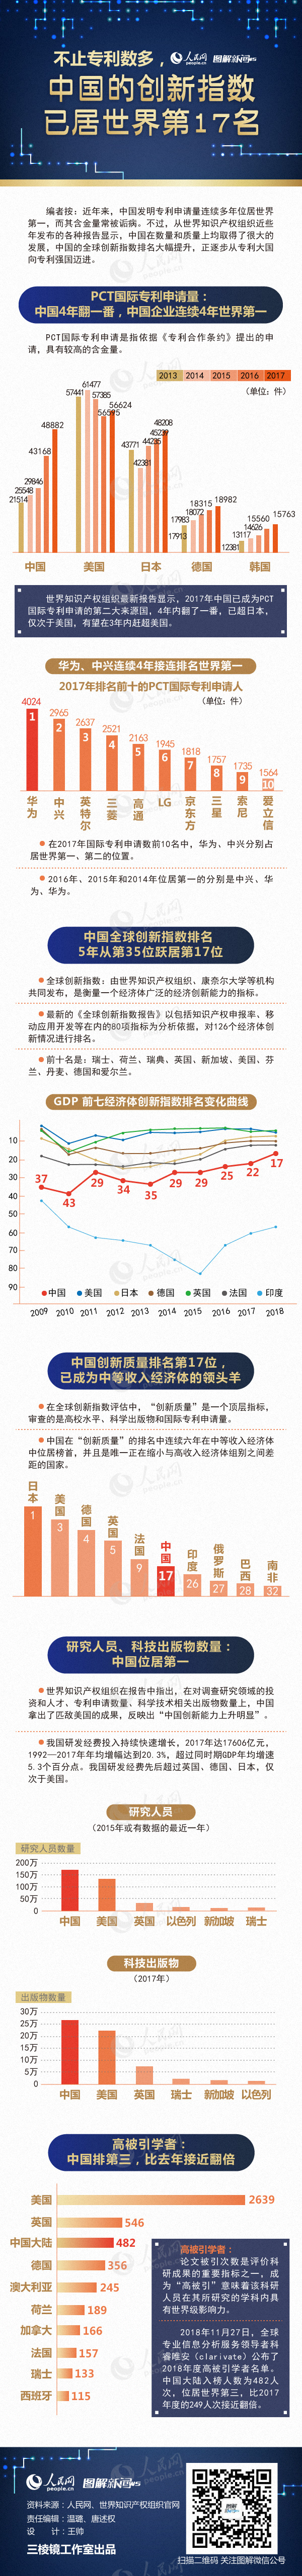 图解：不止专利数多 中国的创新指数已居世界第17名